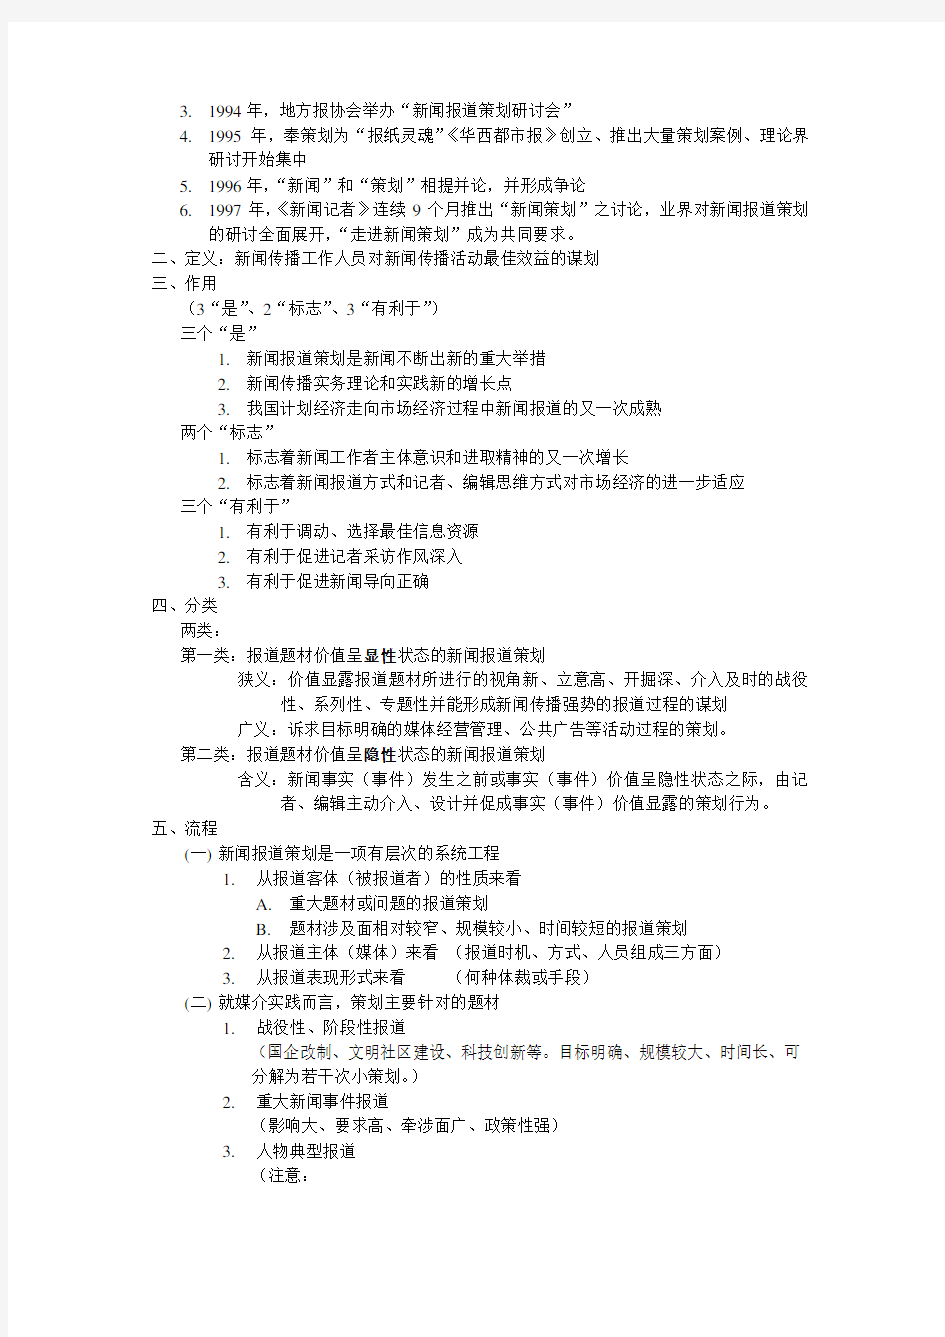 刘海贵《中国新闻采访写作教程》重点笔记